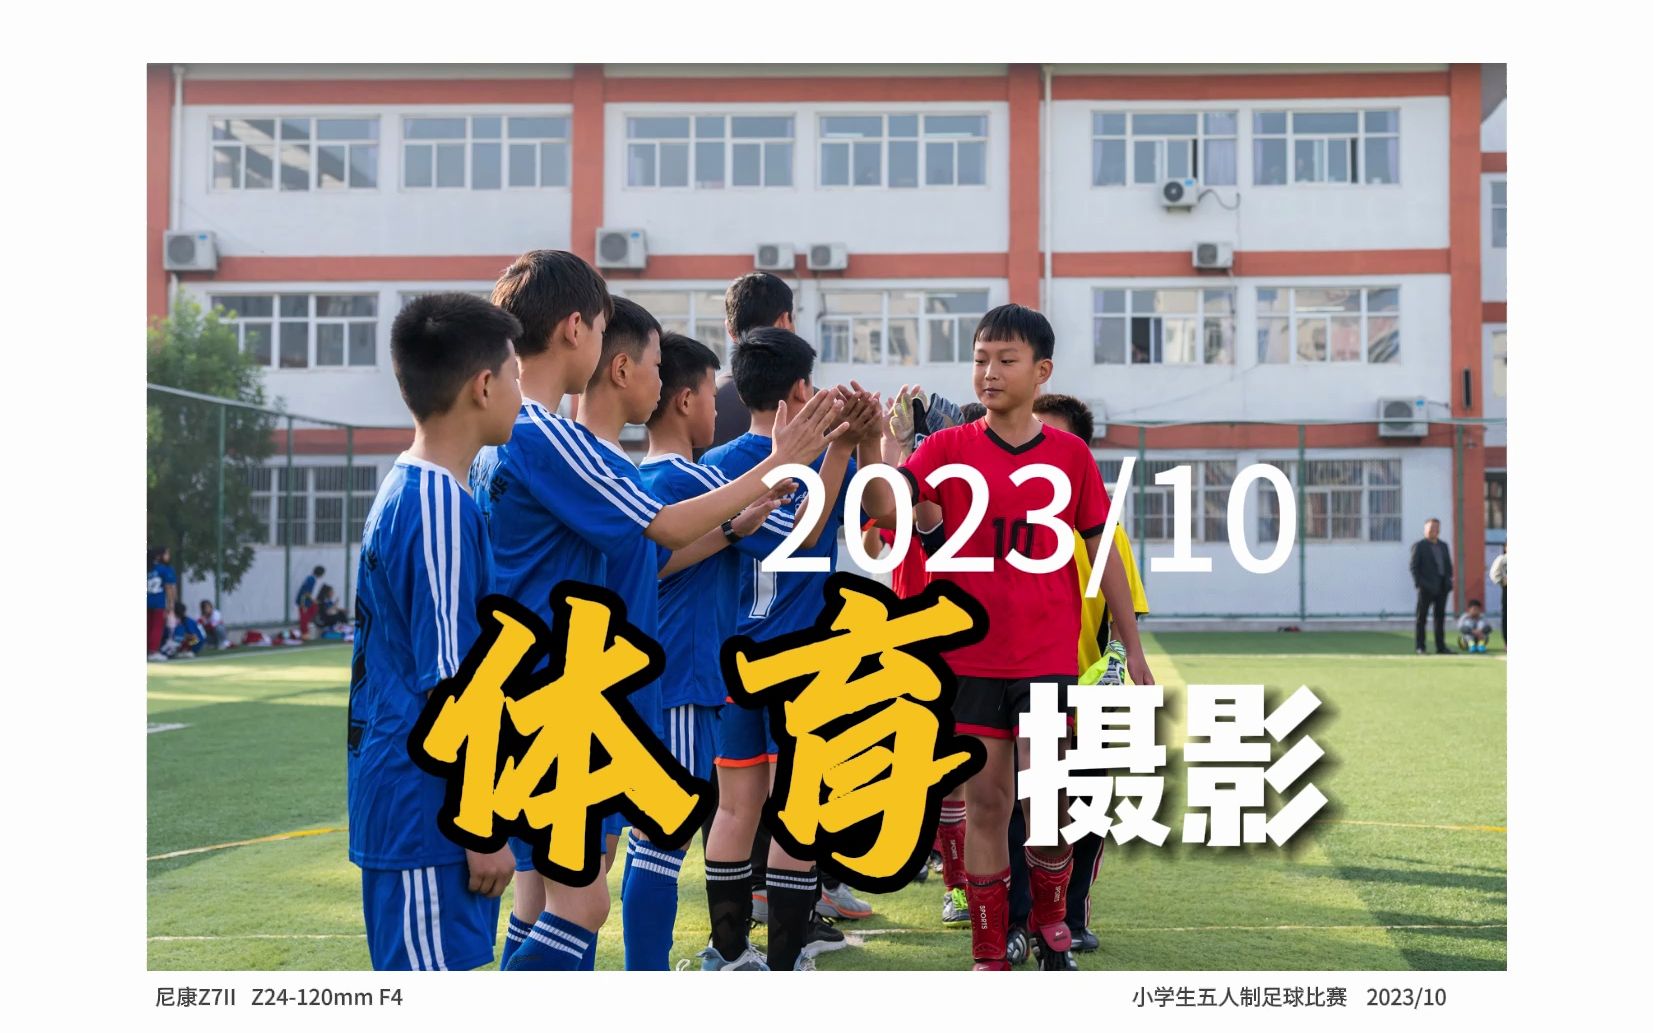 【摄影作品集】体育摄影 足球比赛 小学生五人制足球比赛